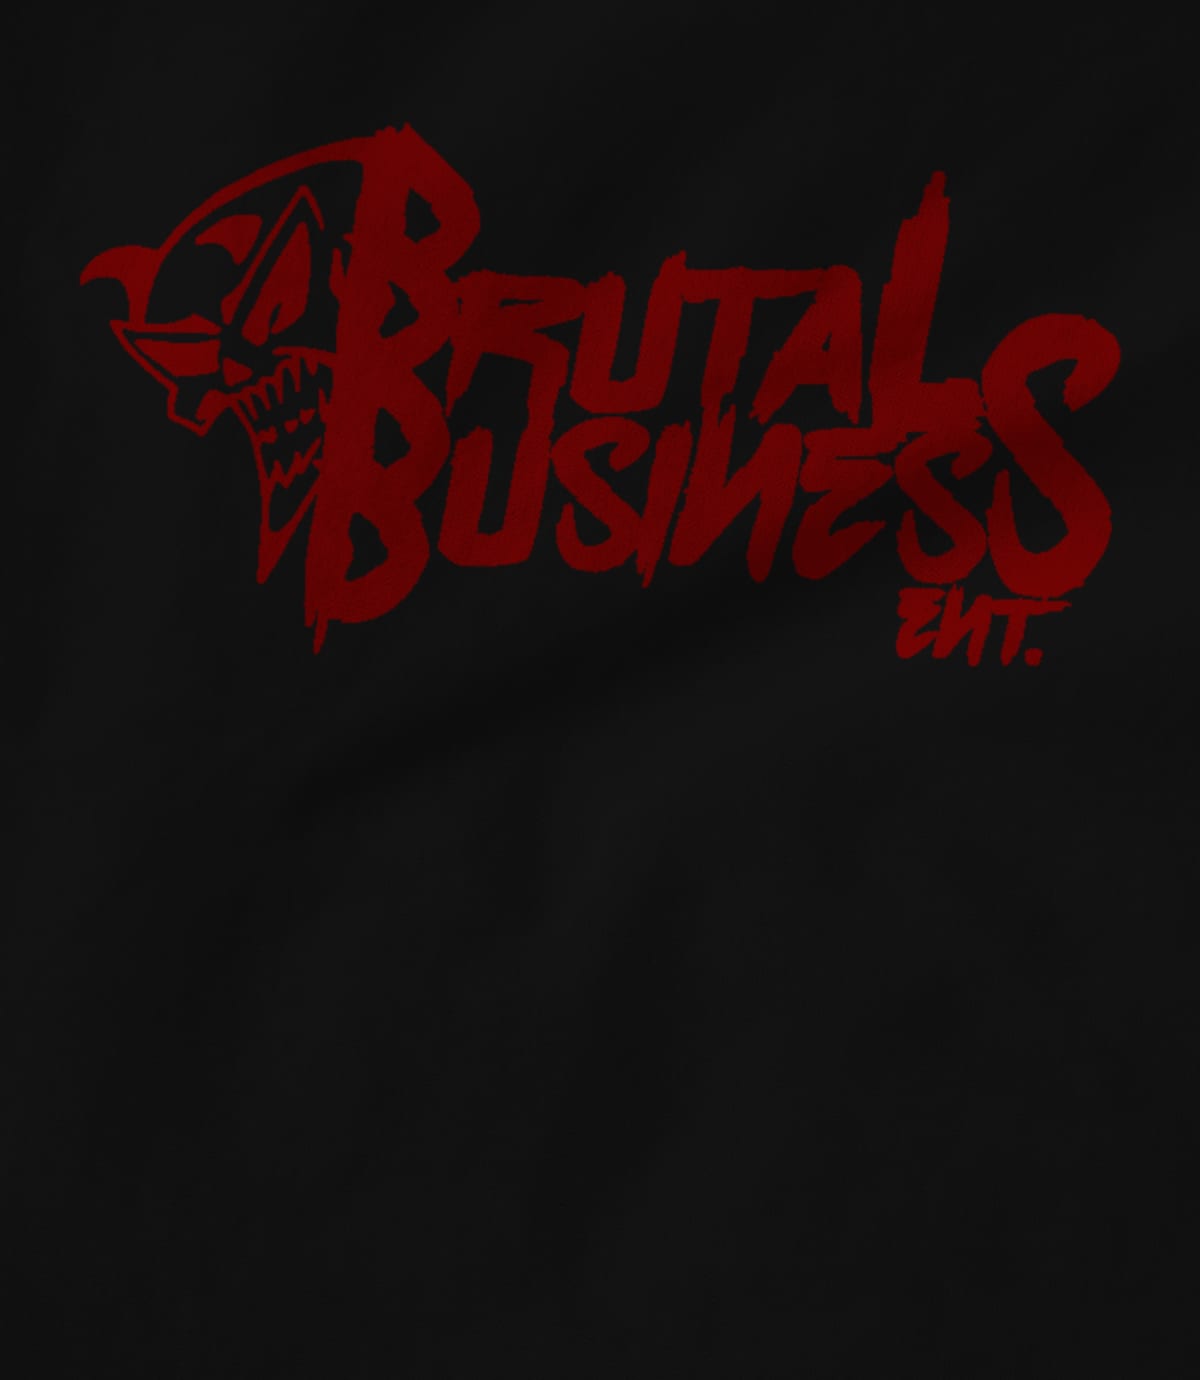 Brutal Business Ent